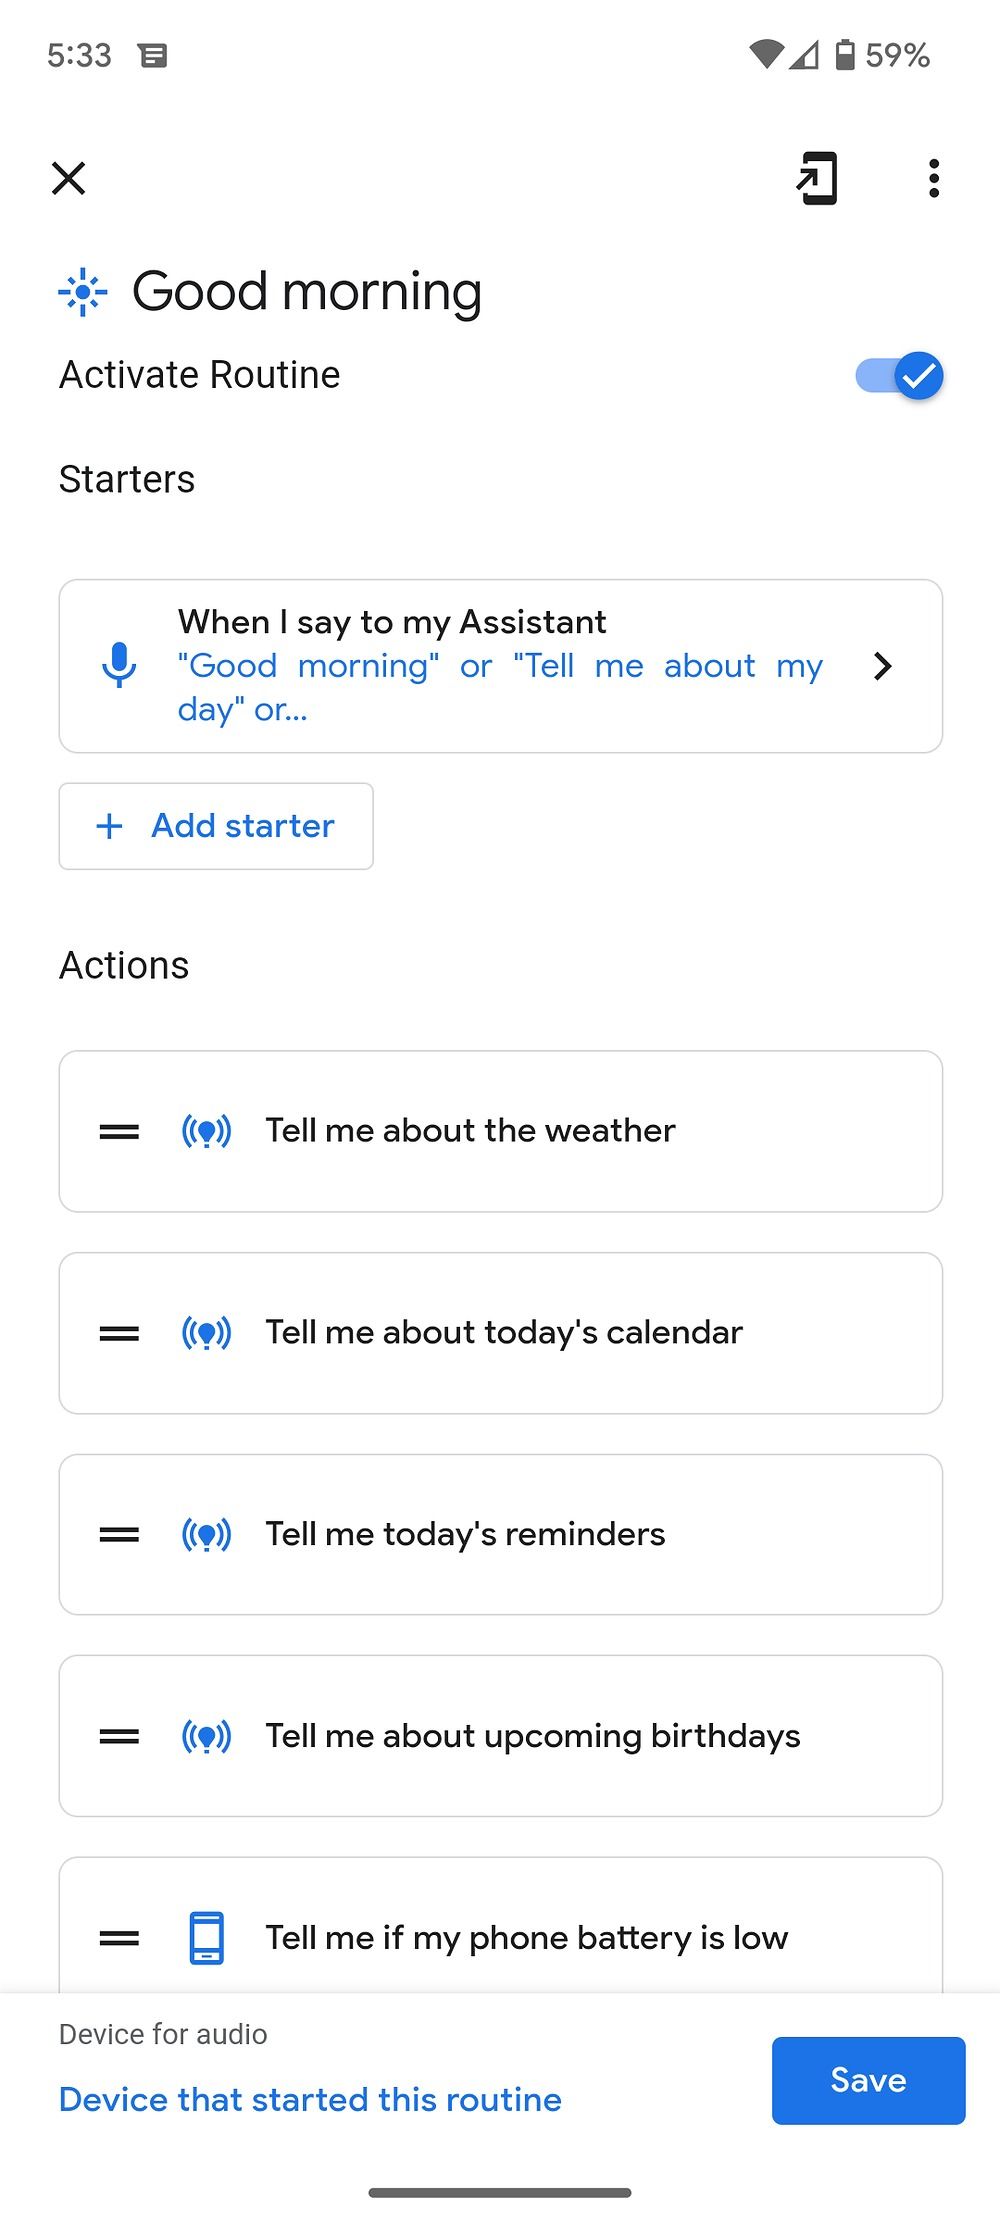 Captura de tela de dicas dadas pelo assistente do Google no Android